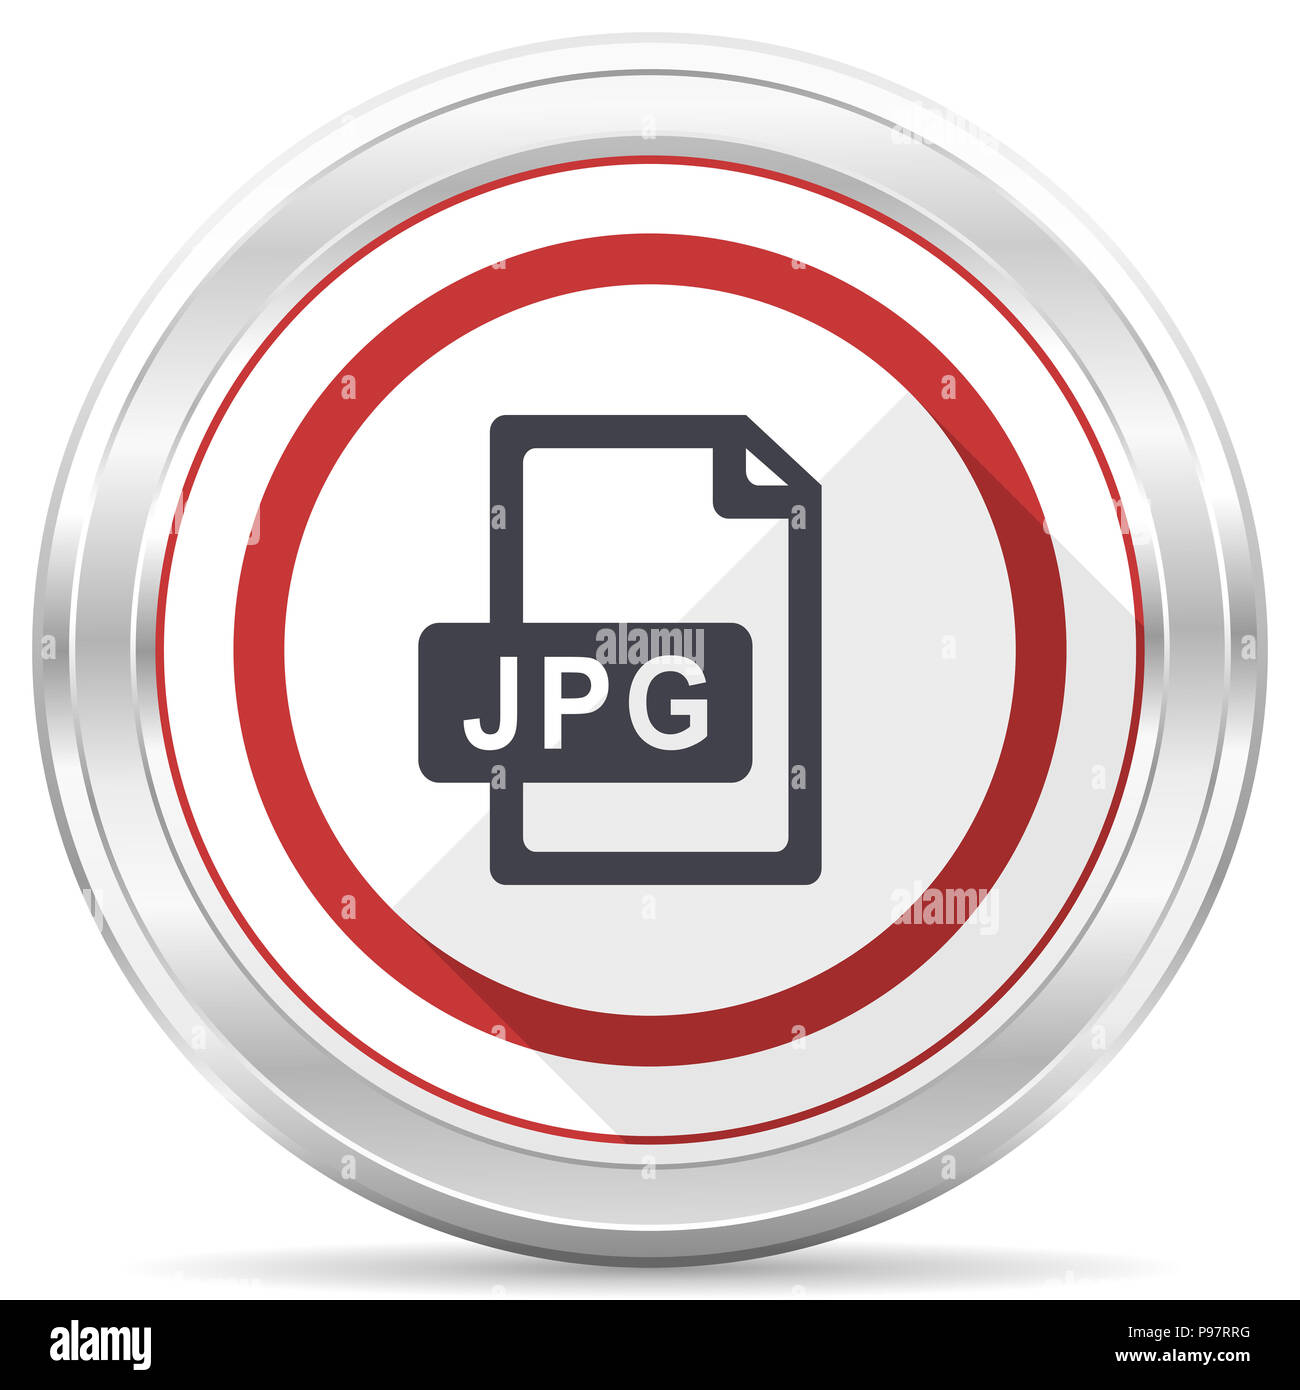 Jpg file silver metallic chrome border round web icon on white background Stock Photo